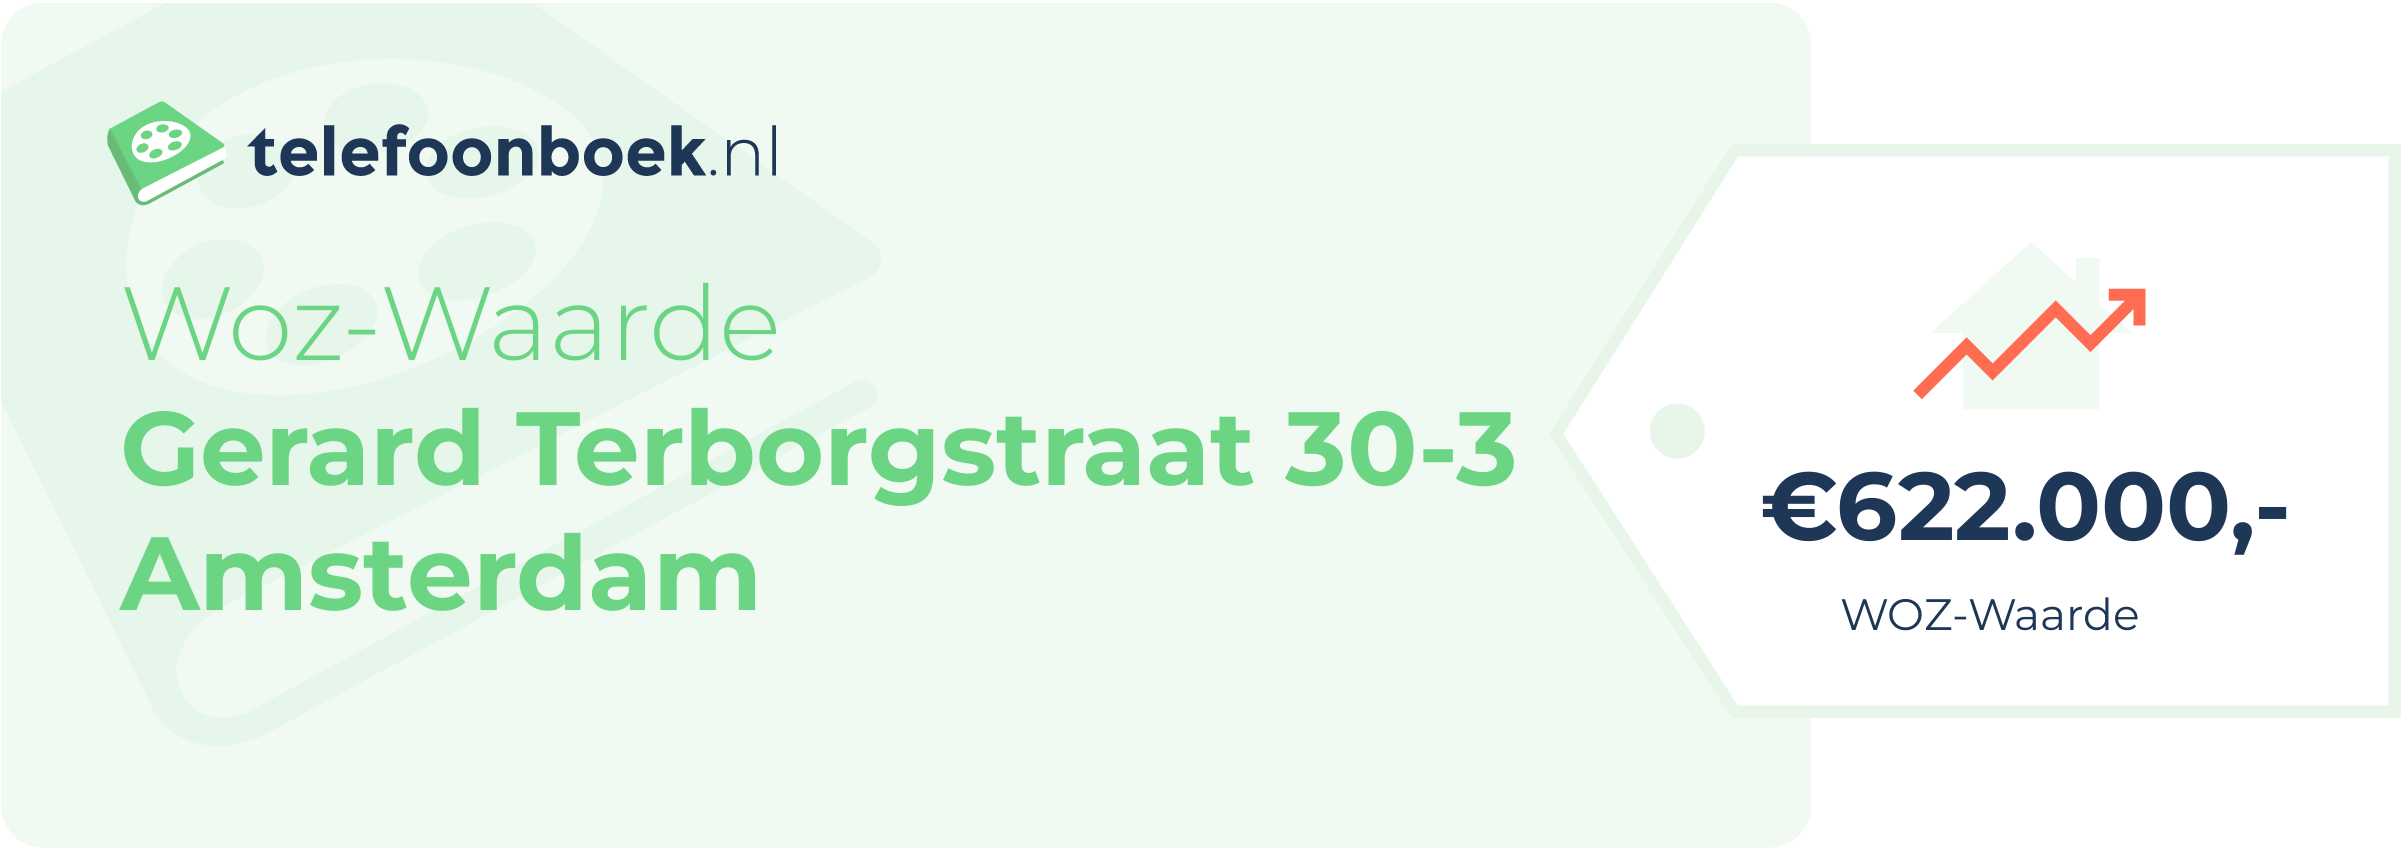 WOZ-waarde Gerard Terborgstraat 30-3 Amsterdam